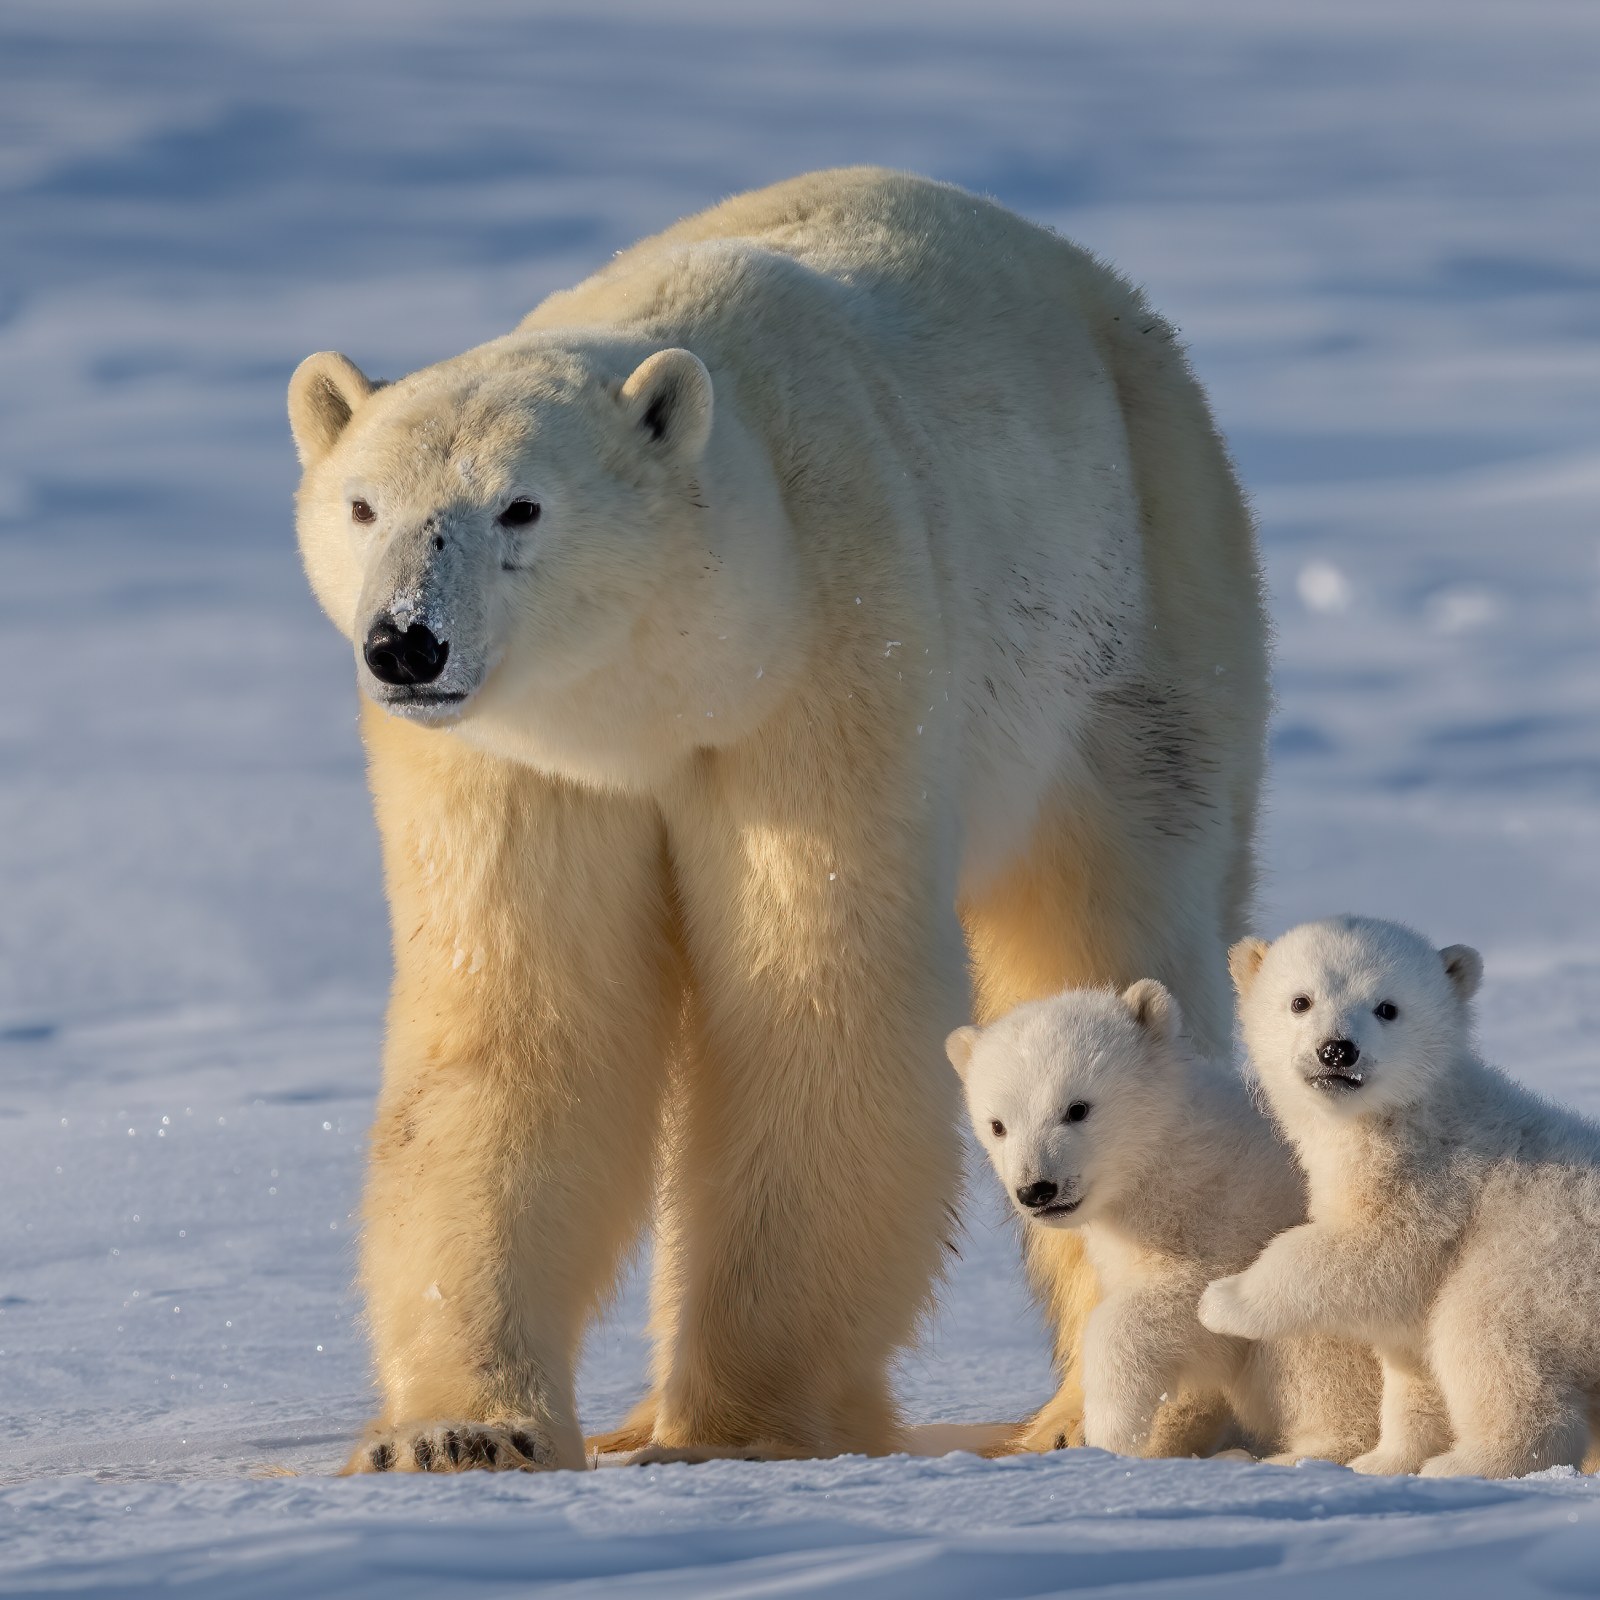 https://d.newsweek.com/en/full/2227187/polar-bear-cubs.jpg?w=1600&h=1600&q=88&f=58f29cf3b8d0873623f44908d3a51558